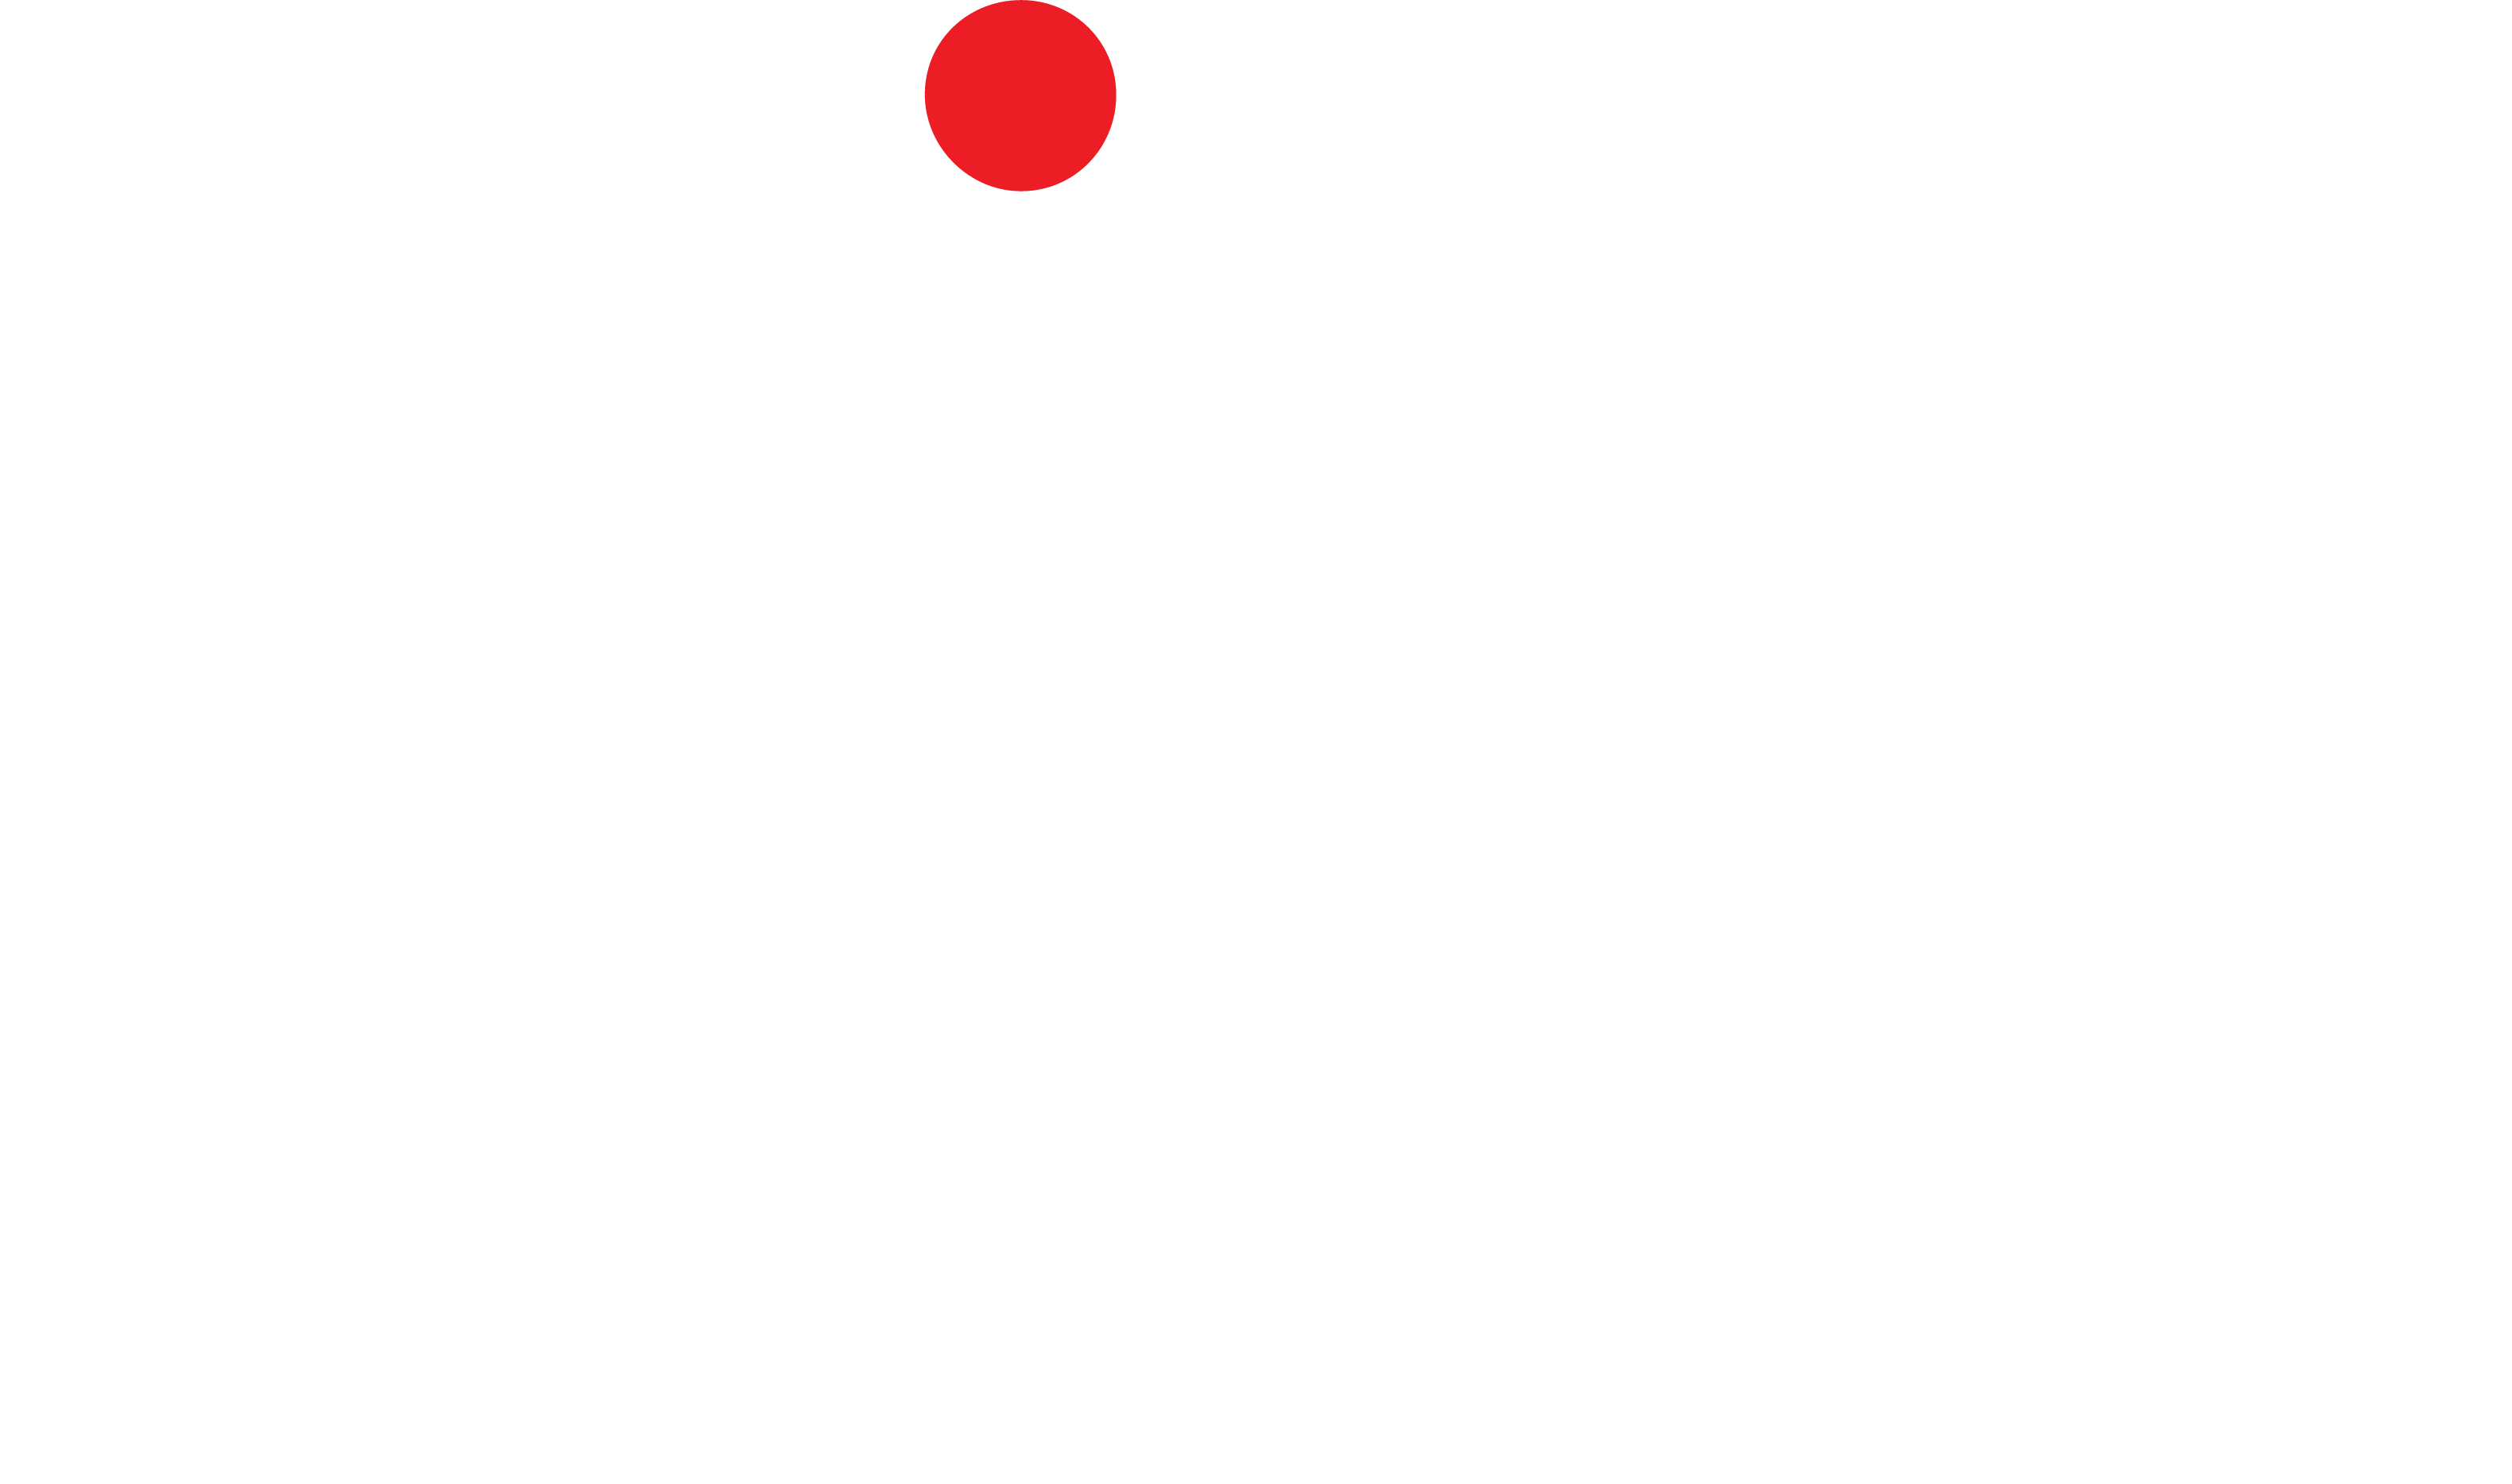 Sizz restaurant